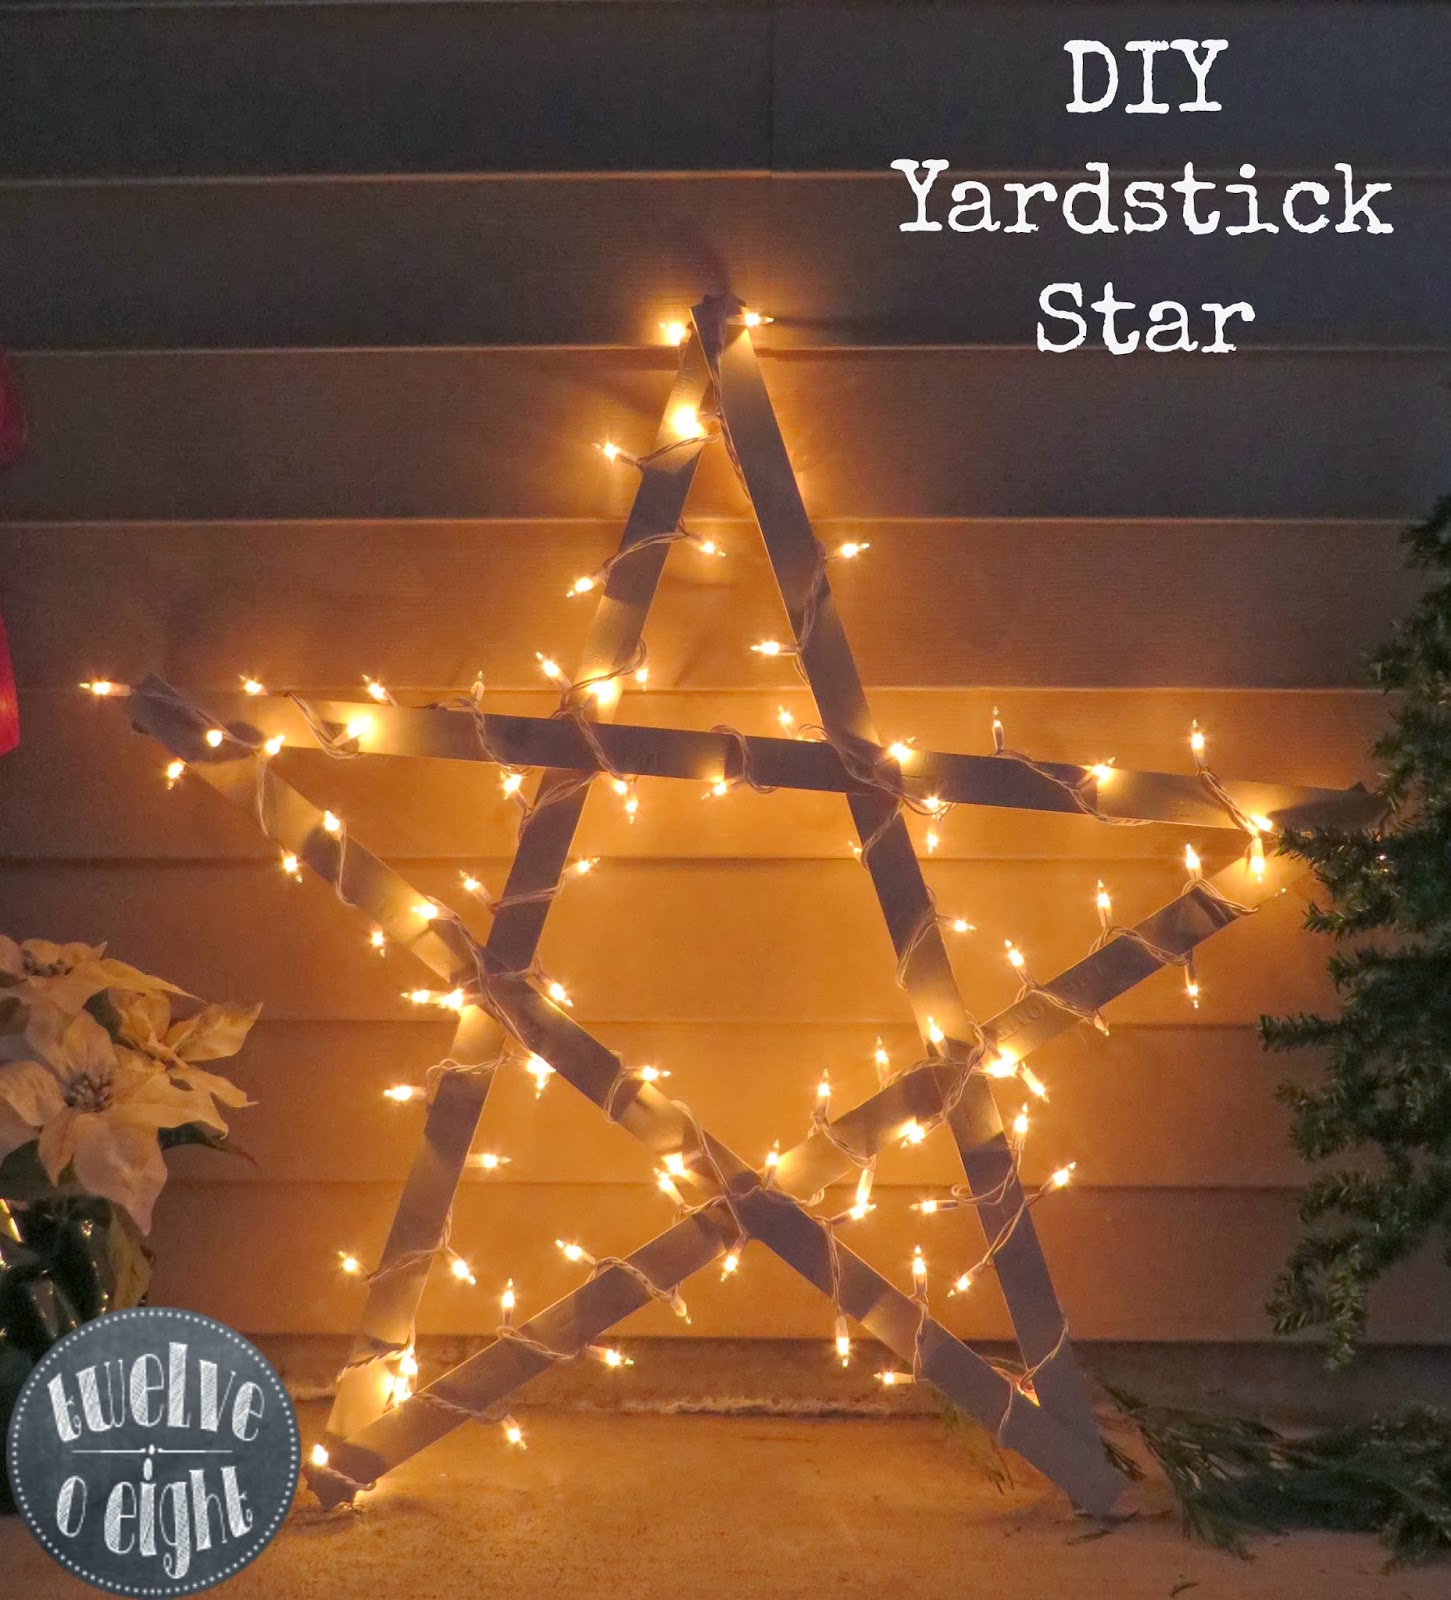 DIY Yardstick Star + What’s Shakin’ Around twelveOeight